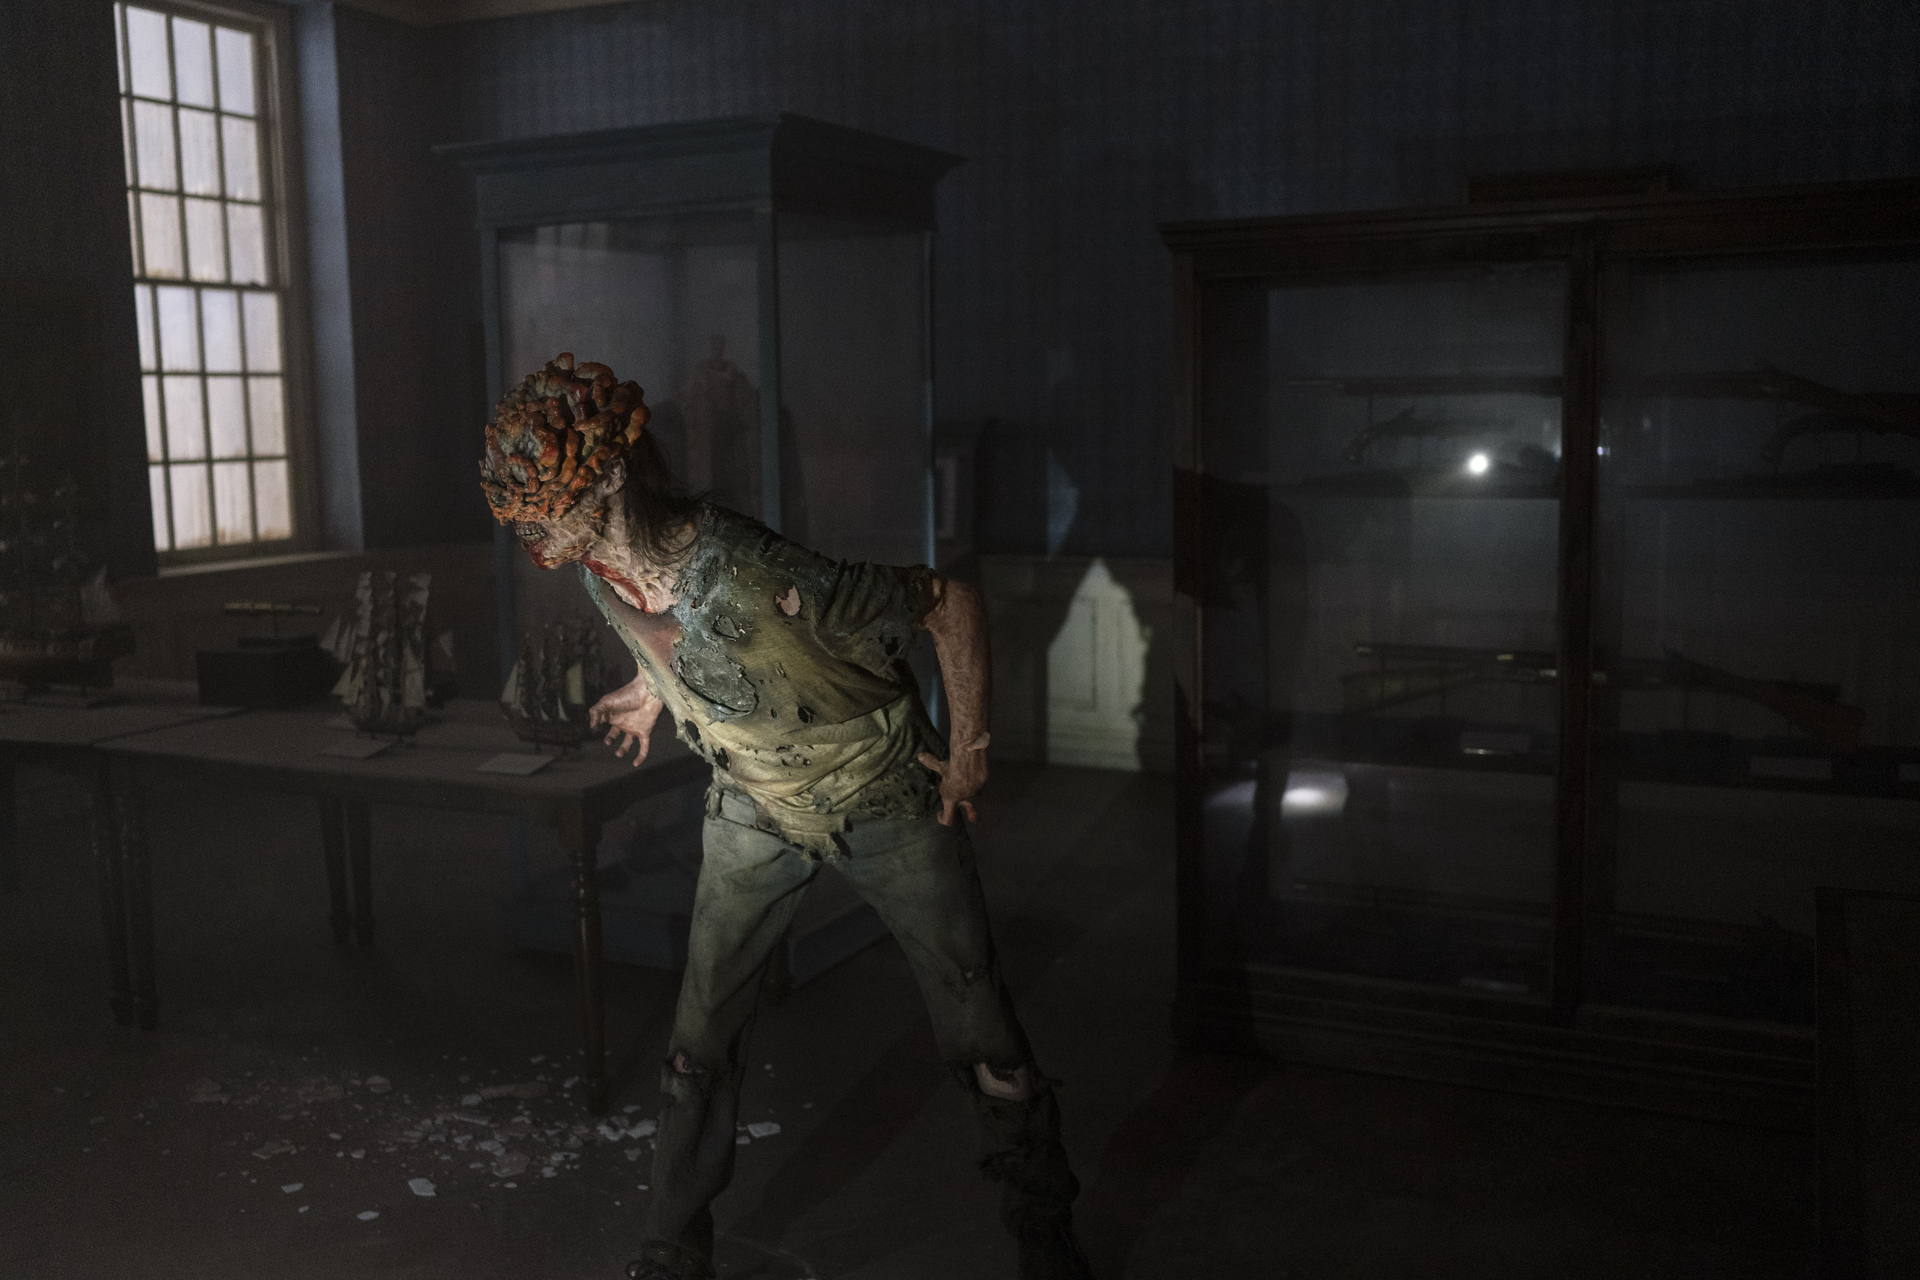 Does Joel Die in The Last of Us HBO Series? - GameRevolution